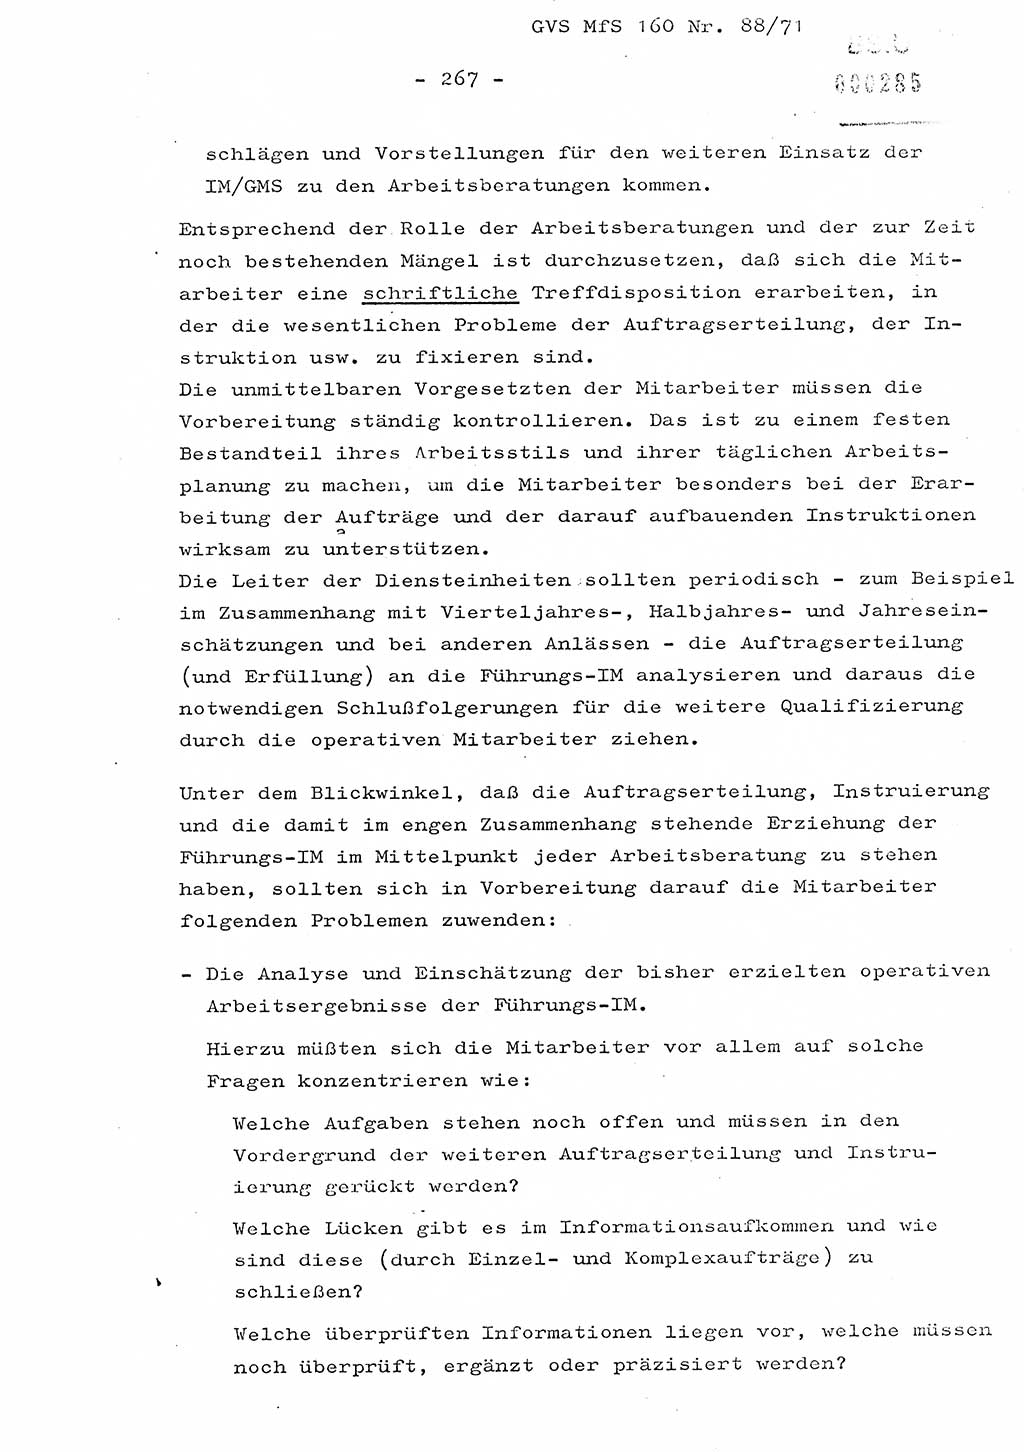 Dissertation Oberstleutnant Josef Schwarz (BV Schwerin), Major Fritz Amm (JHS), Hauptmann Peter Gräßler (JHS), Ministerium für Staatssicherheit (MfS) [Deutsche Demokratische Republik (DDR)], Juristische Hochschule (JHS), Geheime Verschlußsache (GVS) 160-88/71, Potsdam 1972, Seite 267 (Diss. MfS DDR JHS GVS 160-88/71 1972, S. 267)